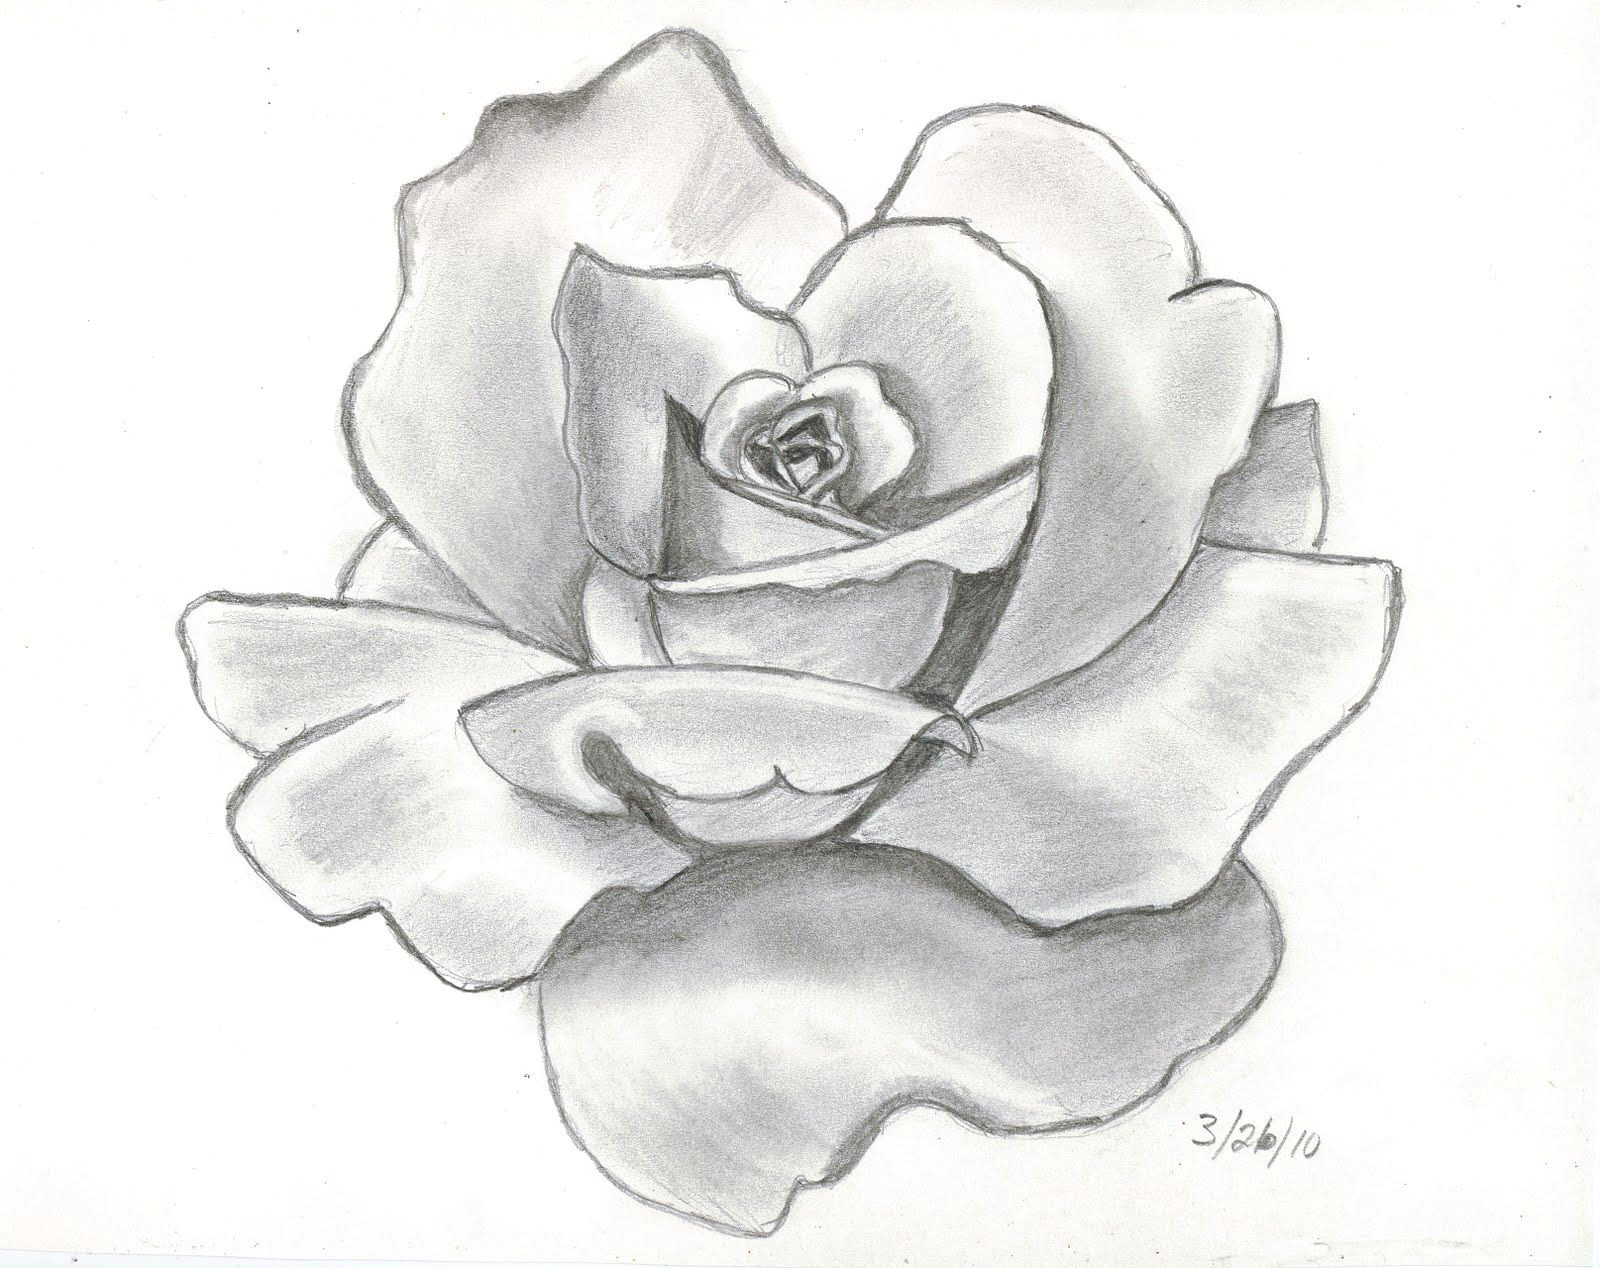 Pencil Drawing Of Flower Garden 61 Best Art Pencil Drawings Of Flowers Images Pencil Drawings